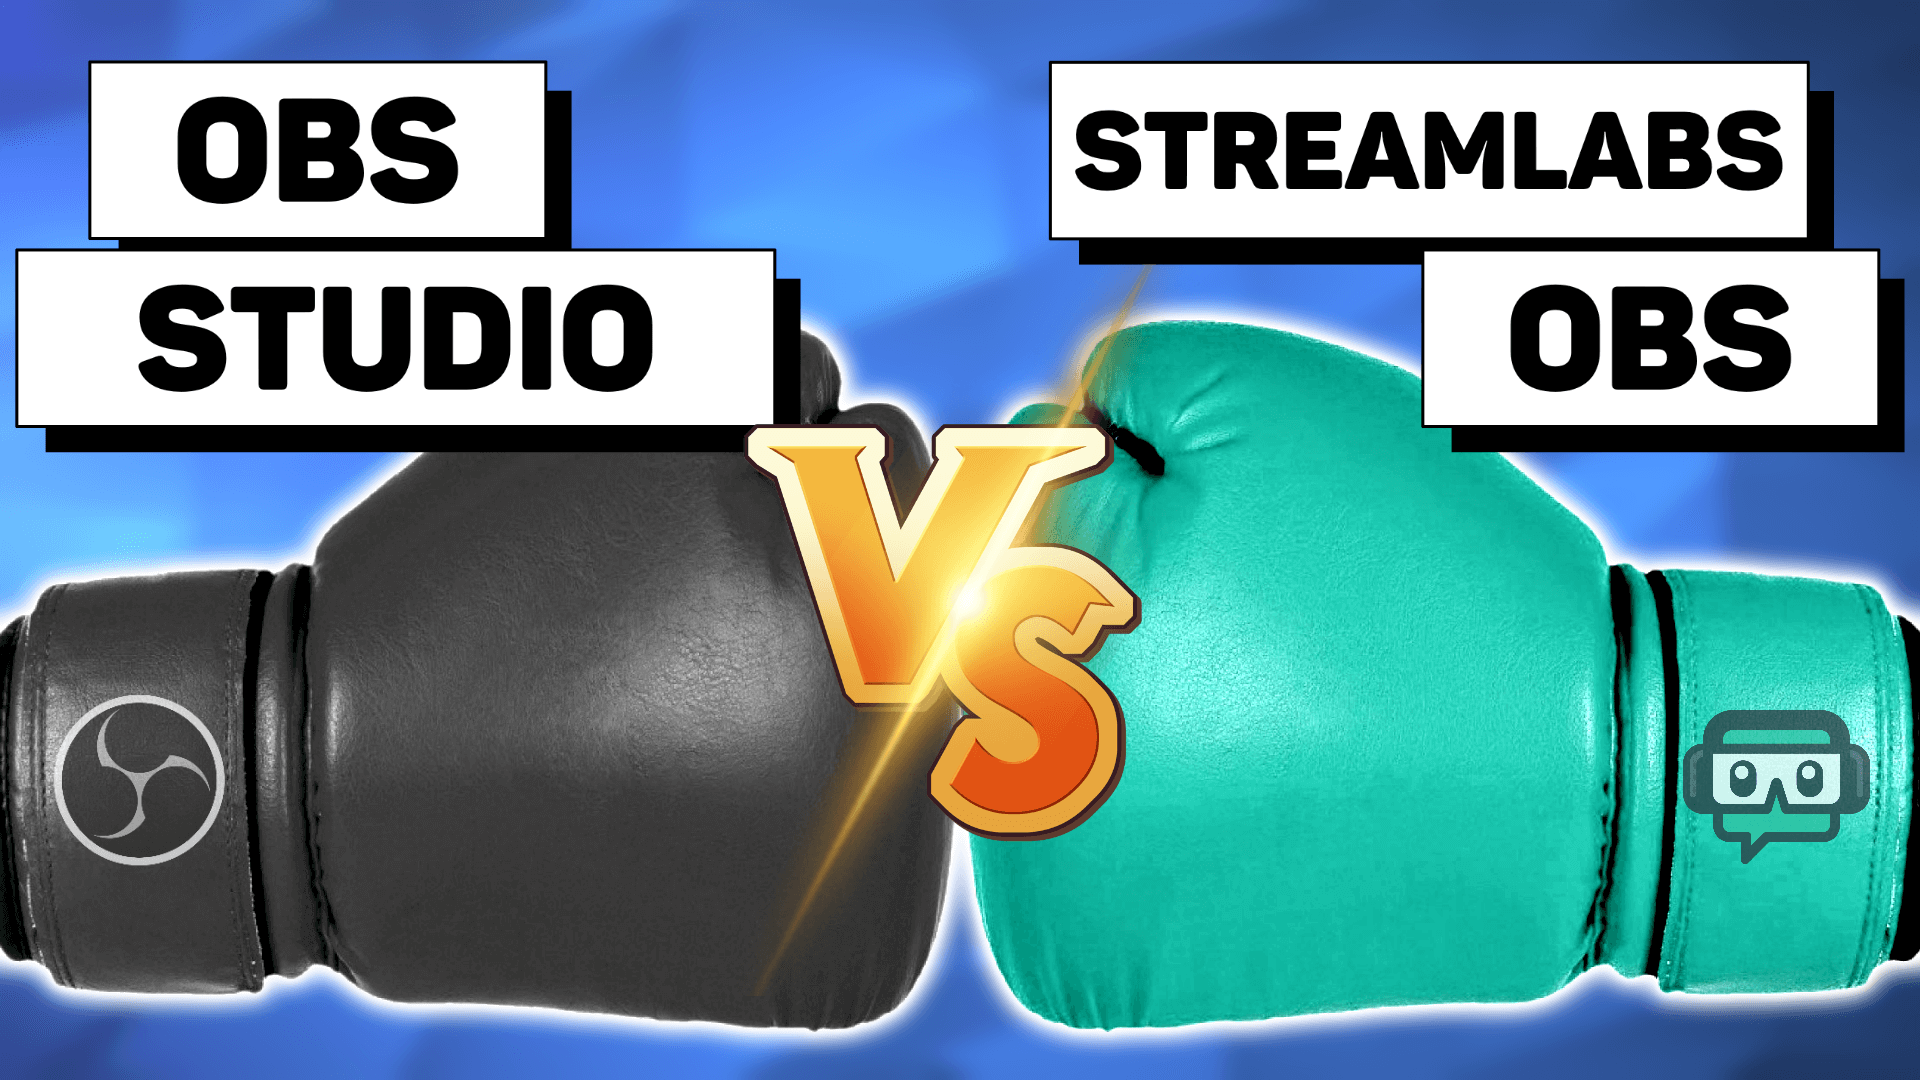 streamlabs obs vs obs studio